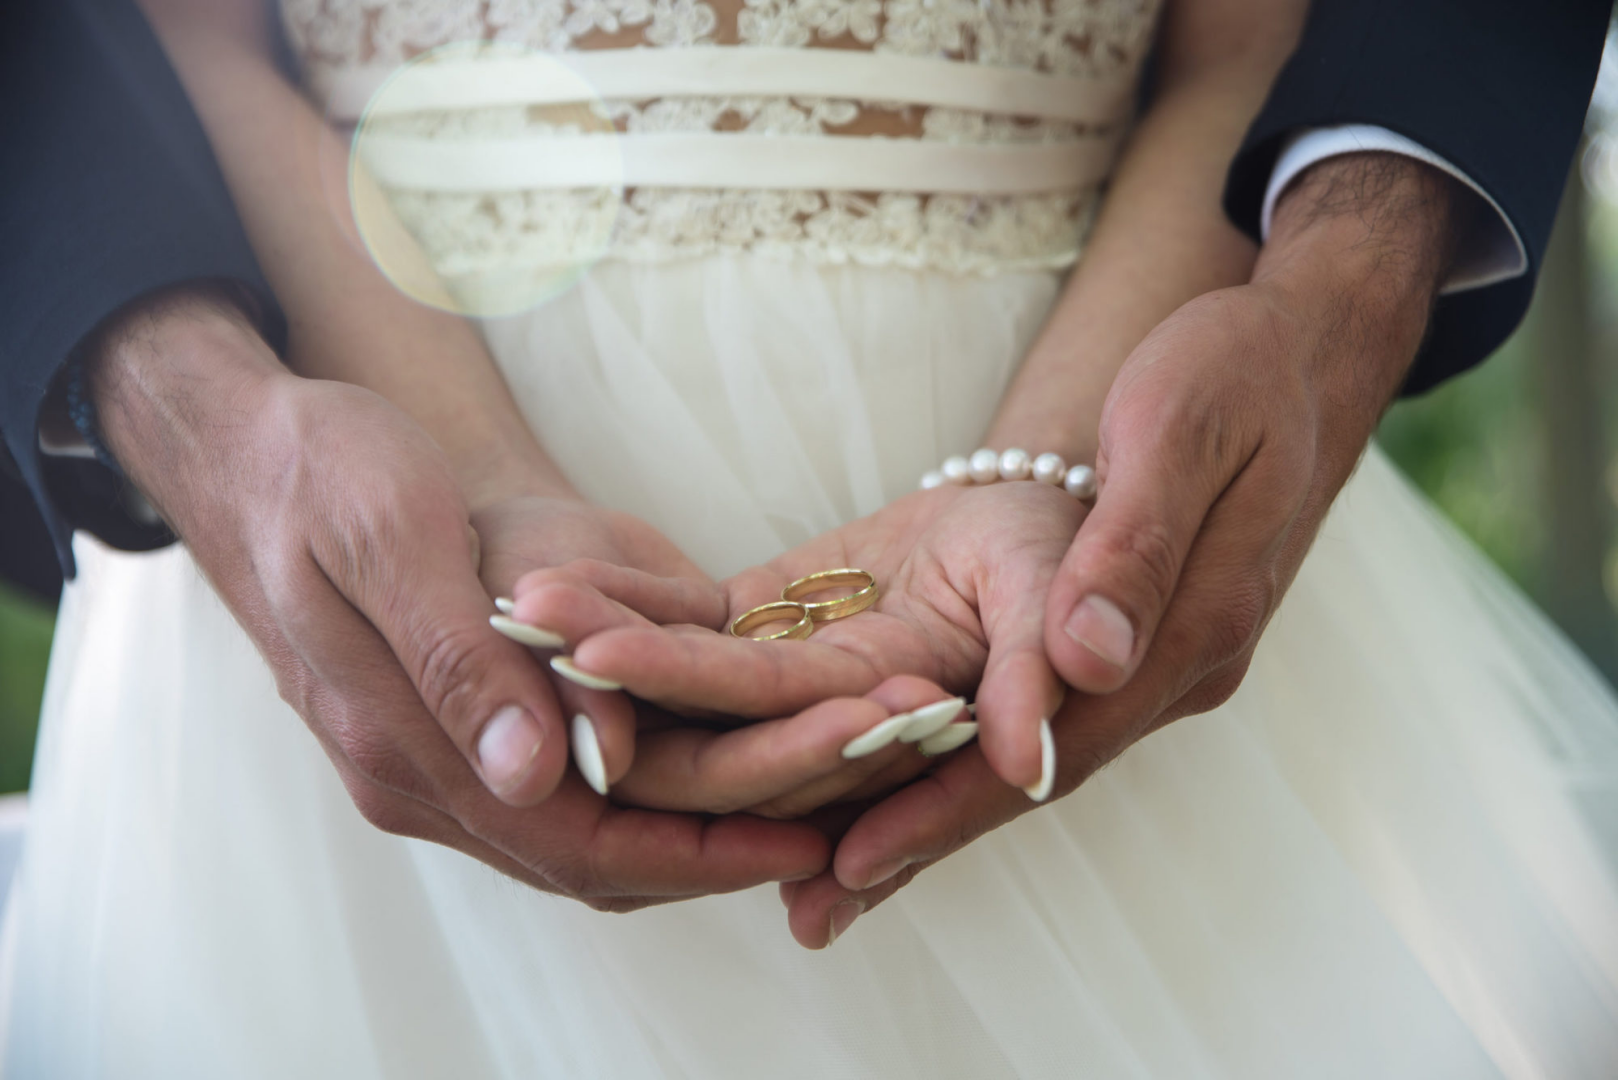 Брак. Обручальные кольца на руках жениха и невесты. Свадьба руки с кольцами. Фото обручальных колец на руках жениха и невесты. Пособие по вступлению в брак